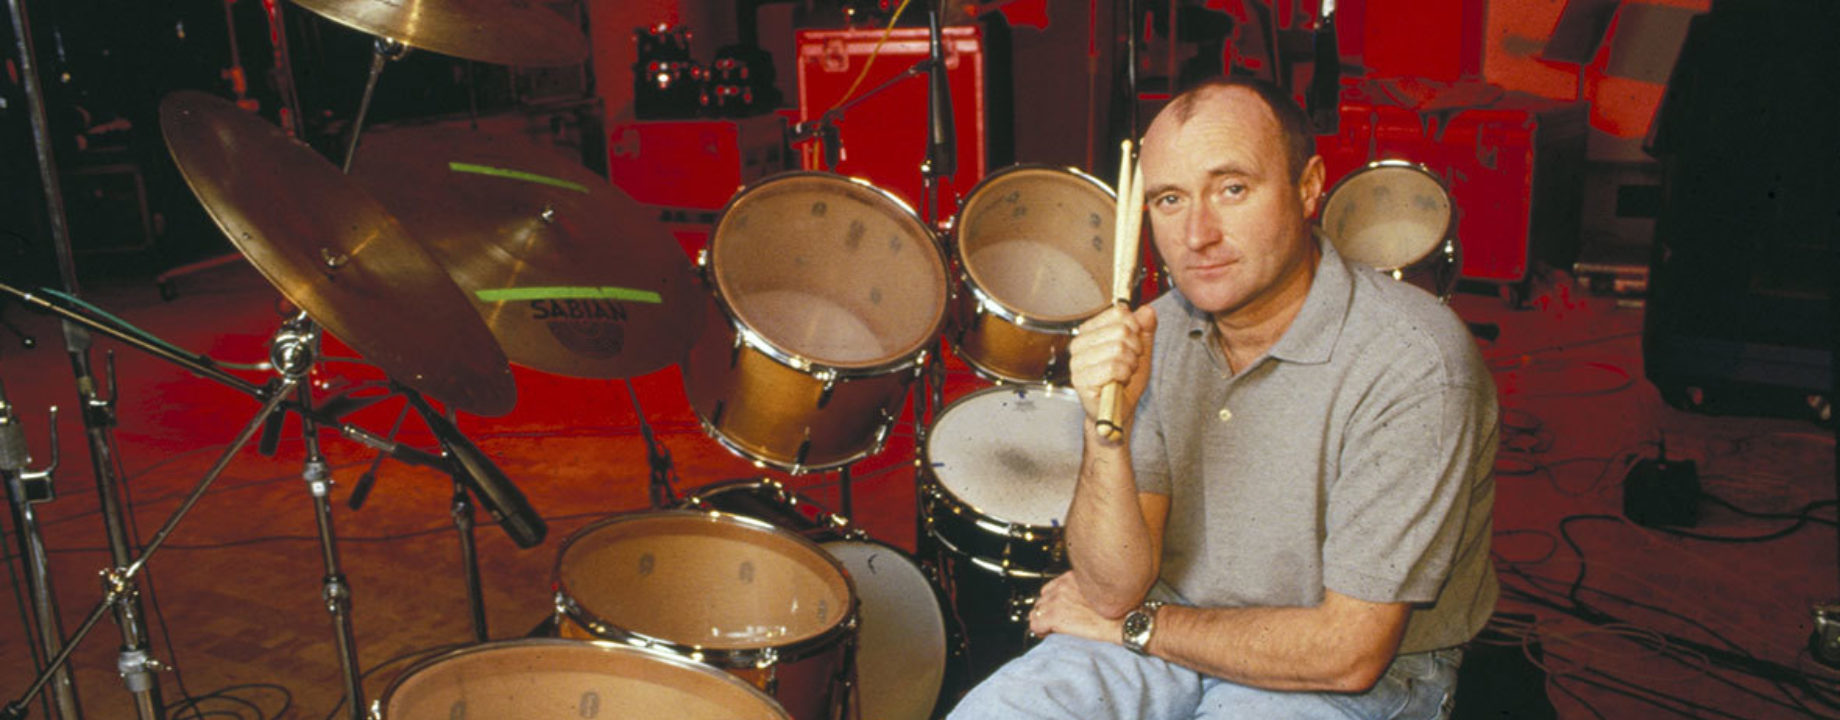 1180w 600h disney legends Phil Collins